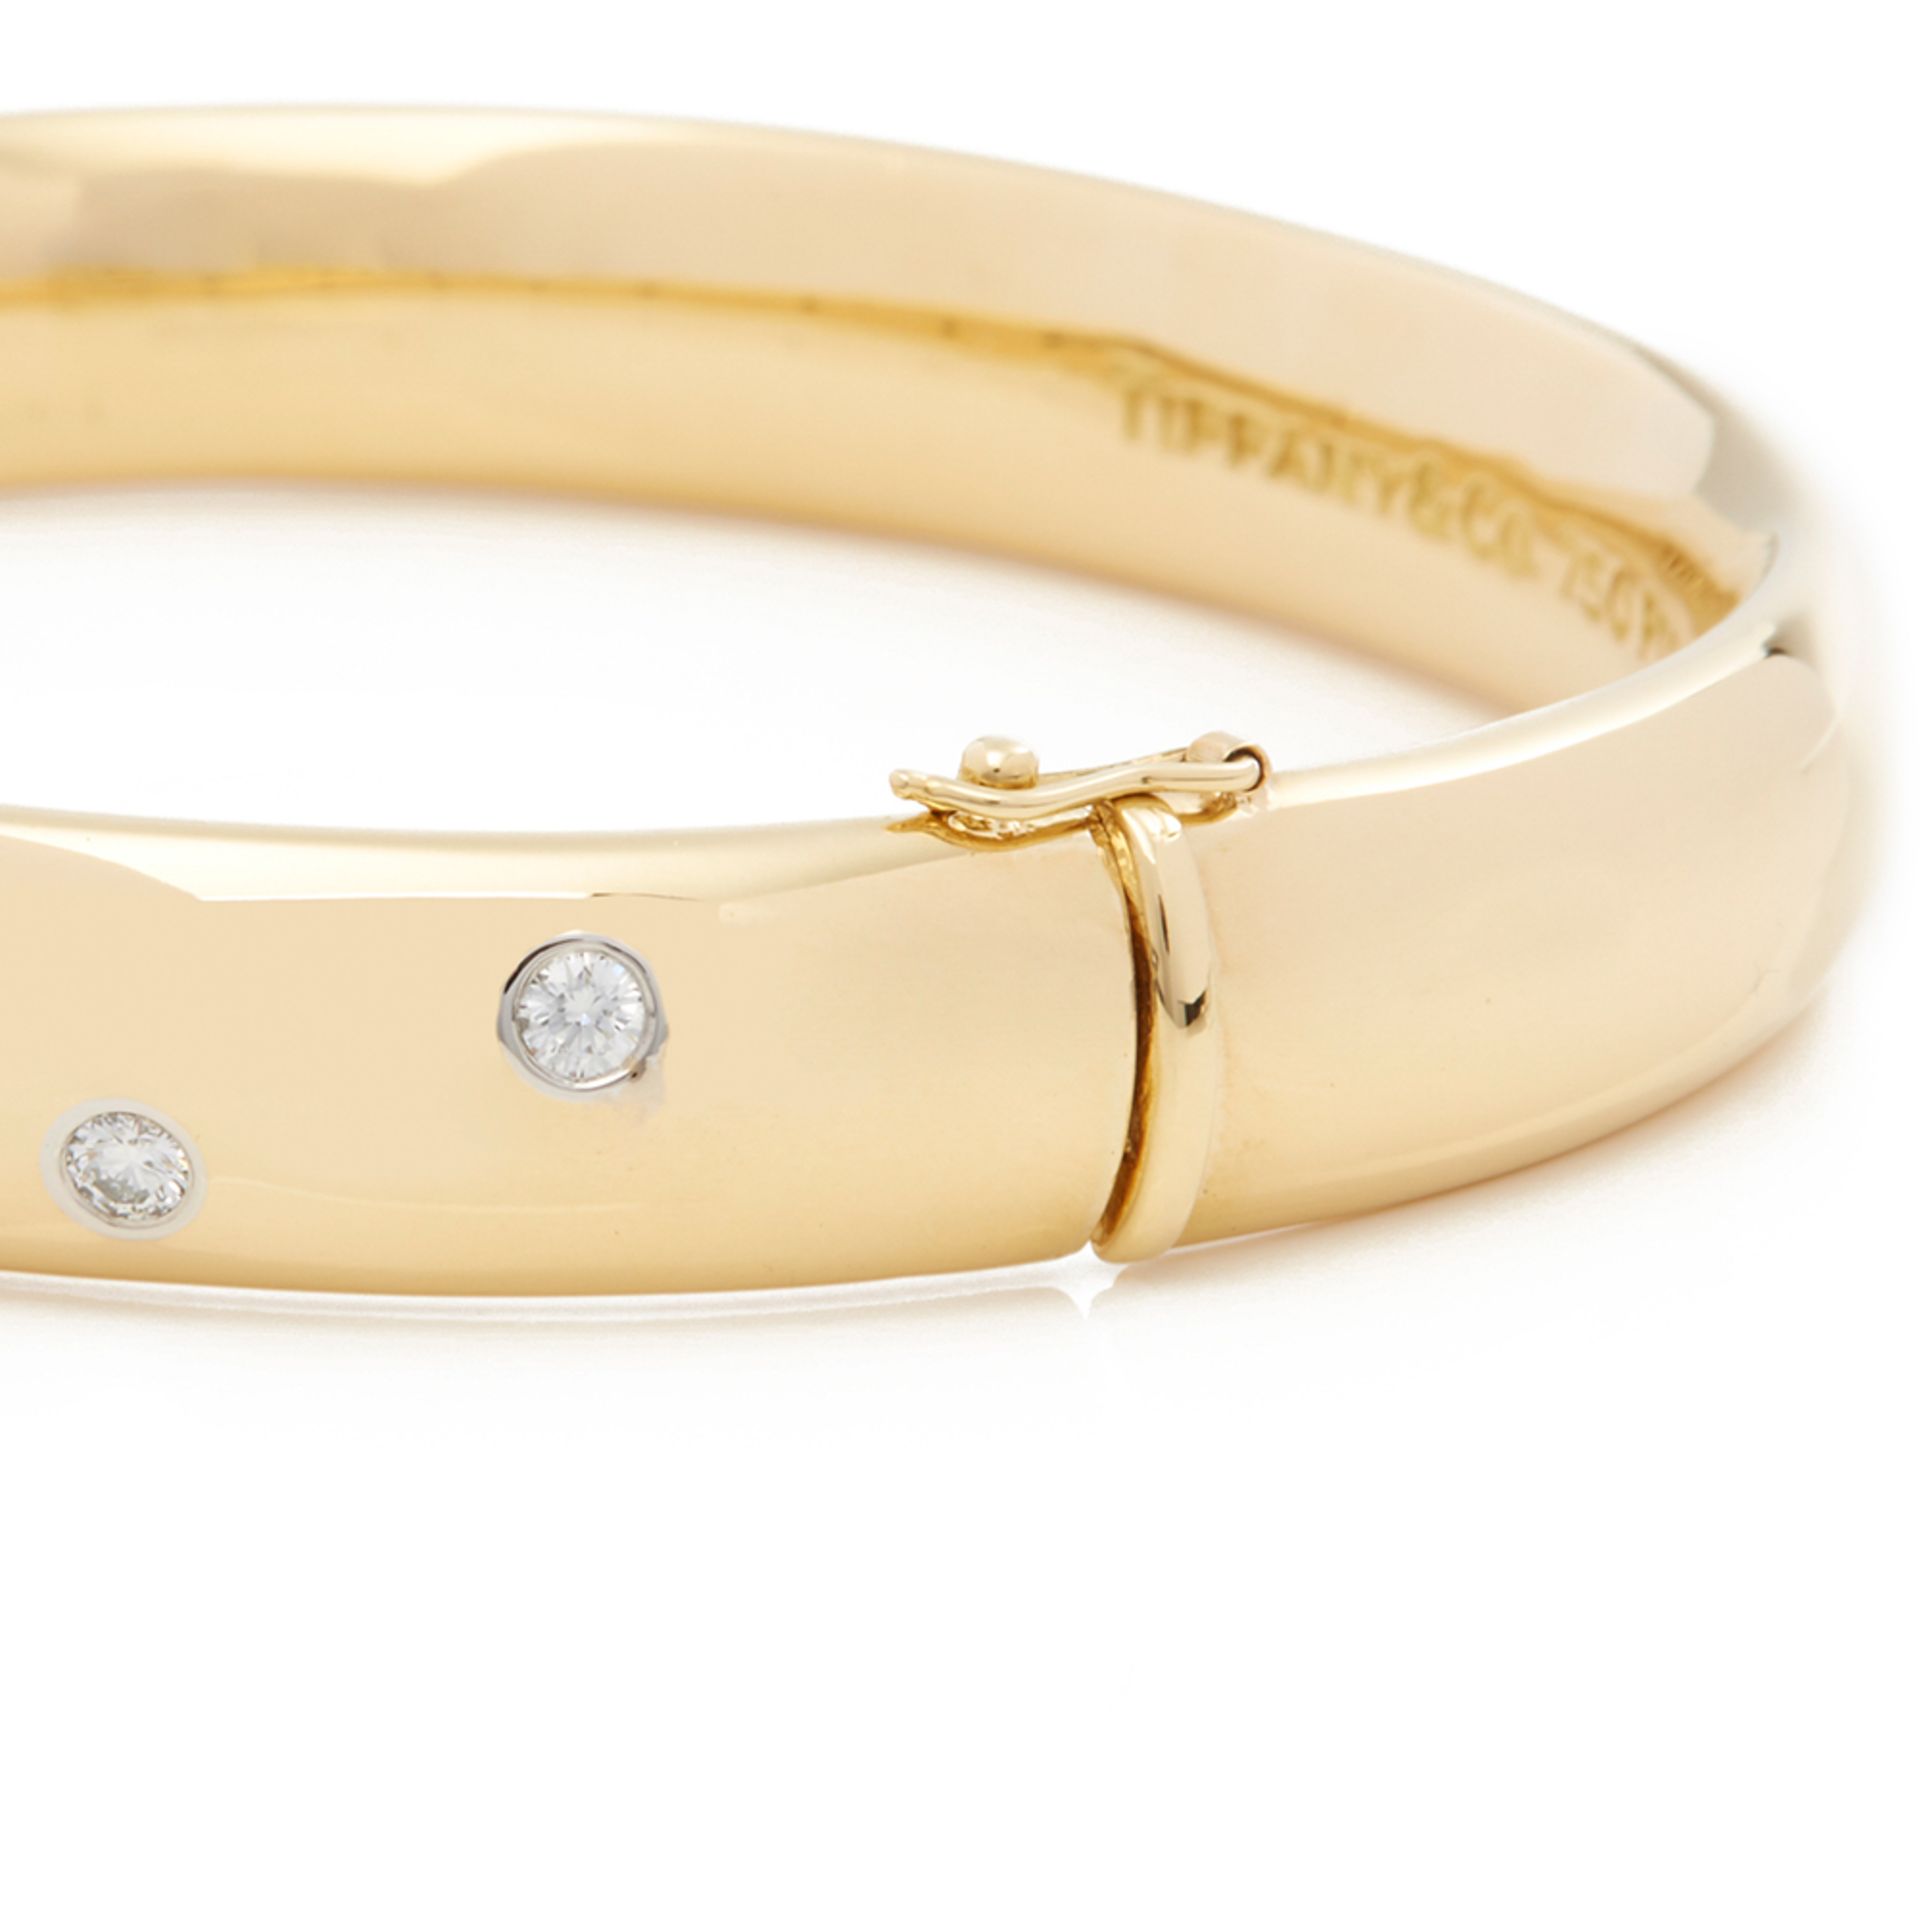 Tiffany & Co. 18k Yellow Gold Diamond Etoile Bracelet - Image 3 of 8